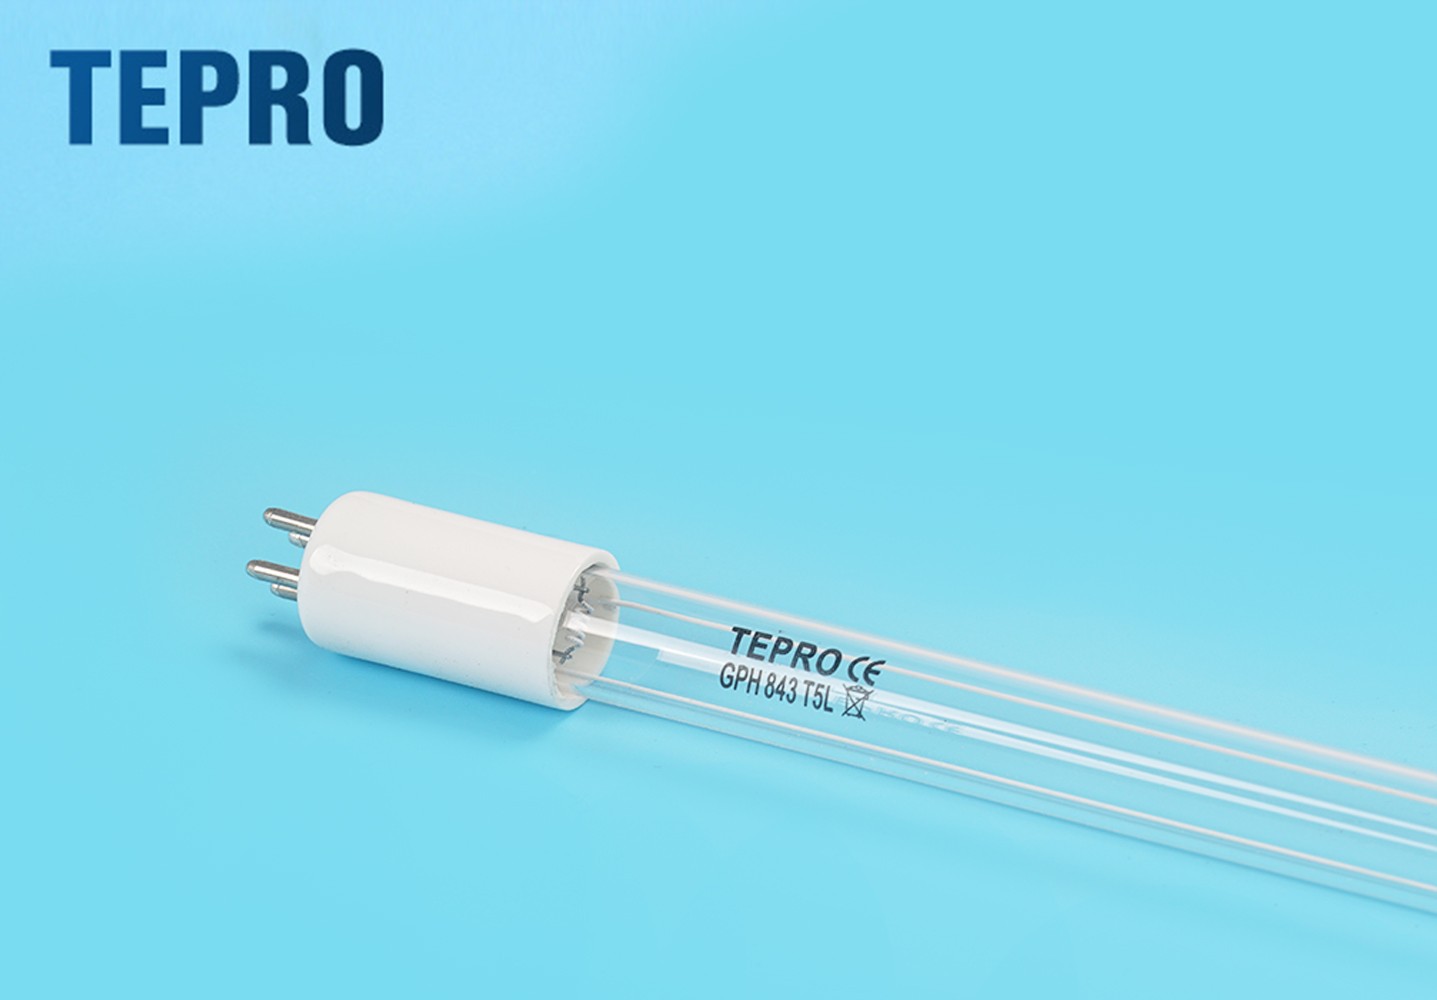 Tepro-Uv Lamp Aquarium Supplier, Ultraviolet Light To Kill Germs | Tepro